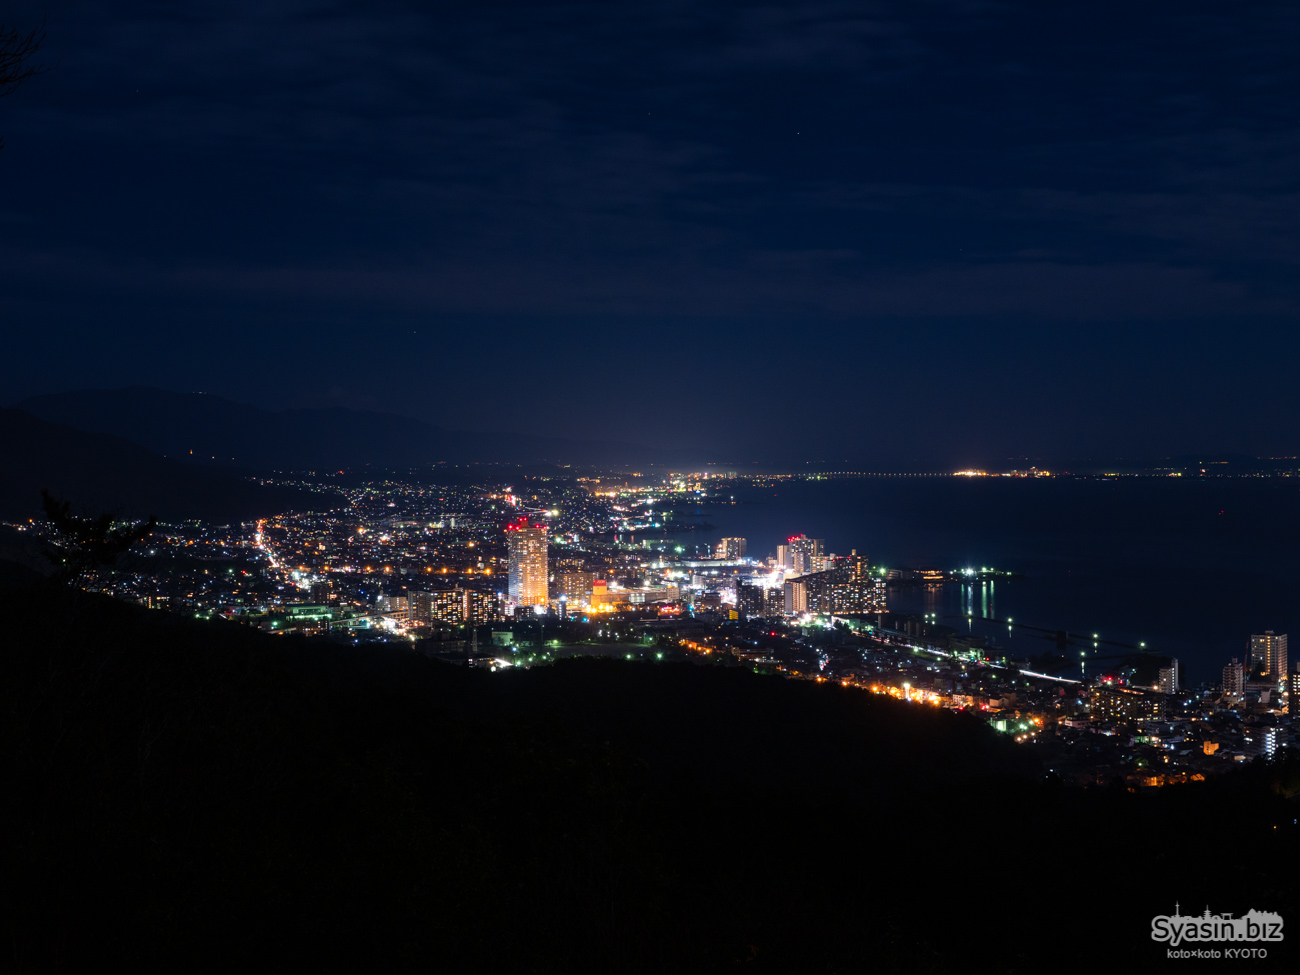 逢坂山の夜景 – 滋賀県大津市